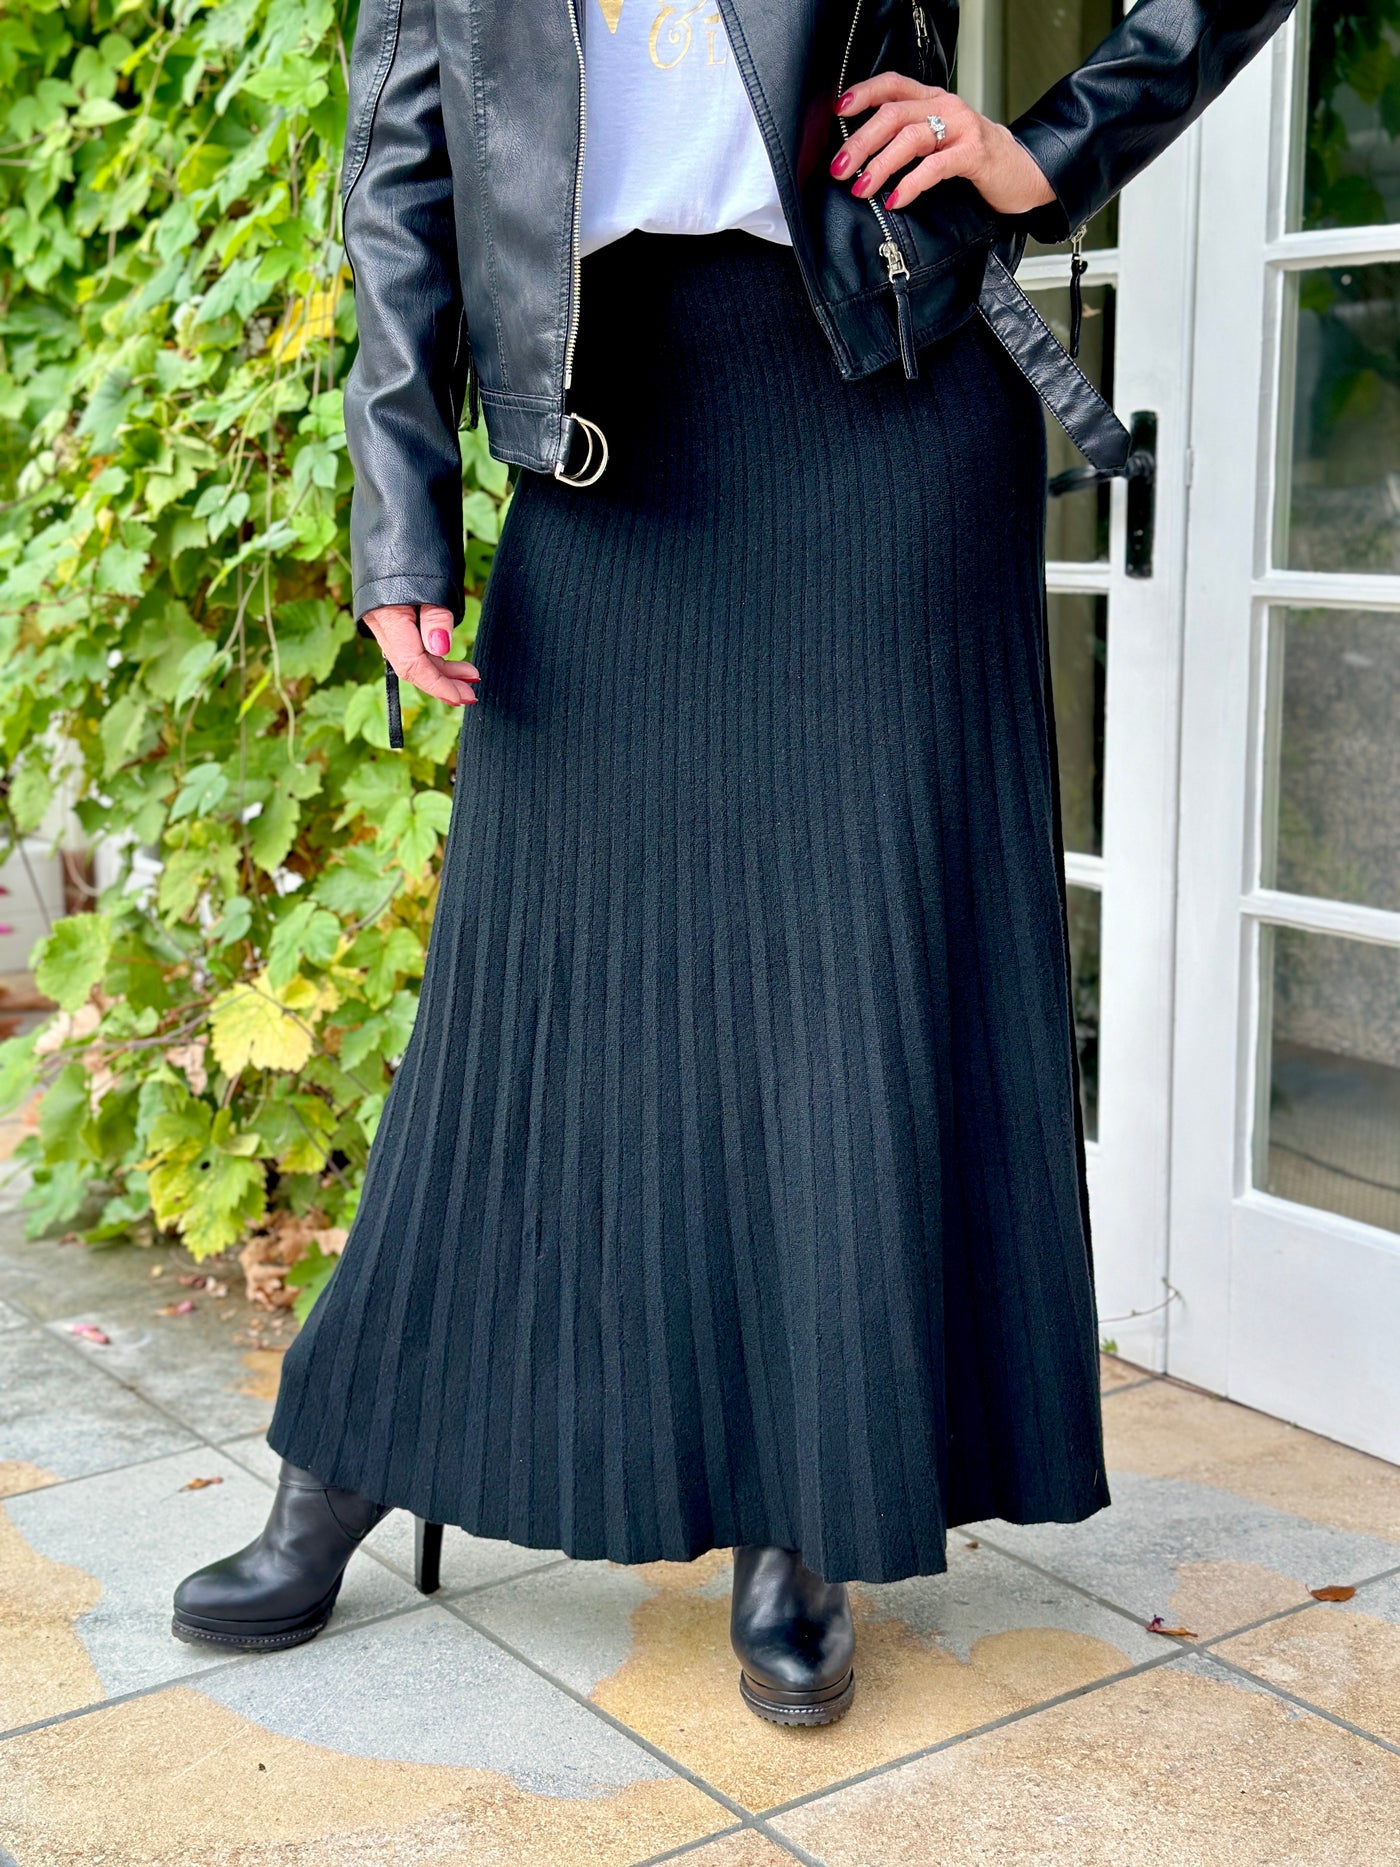 Elsa Knitted Skirt in Classic Black